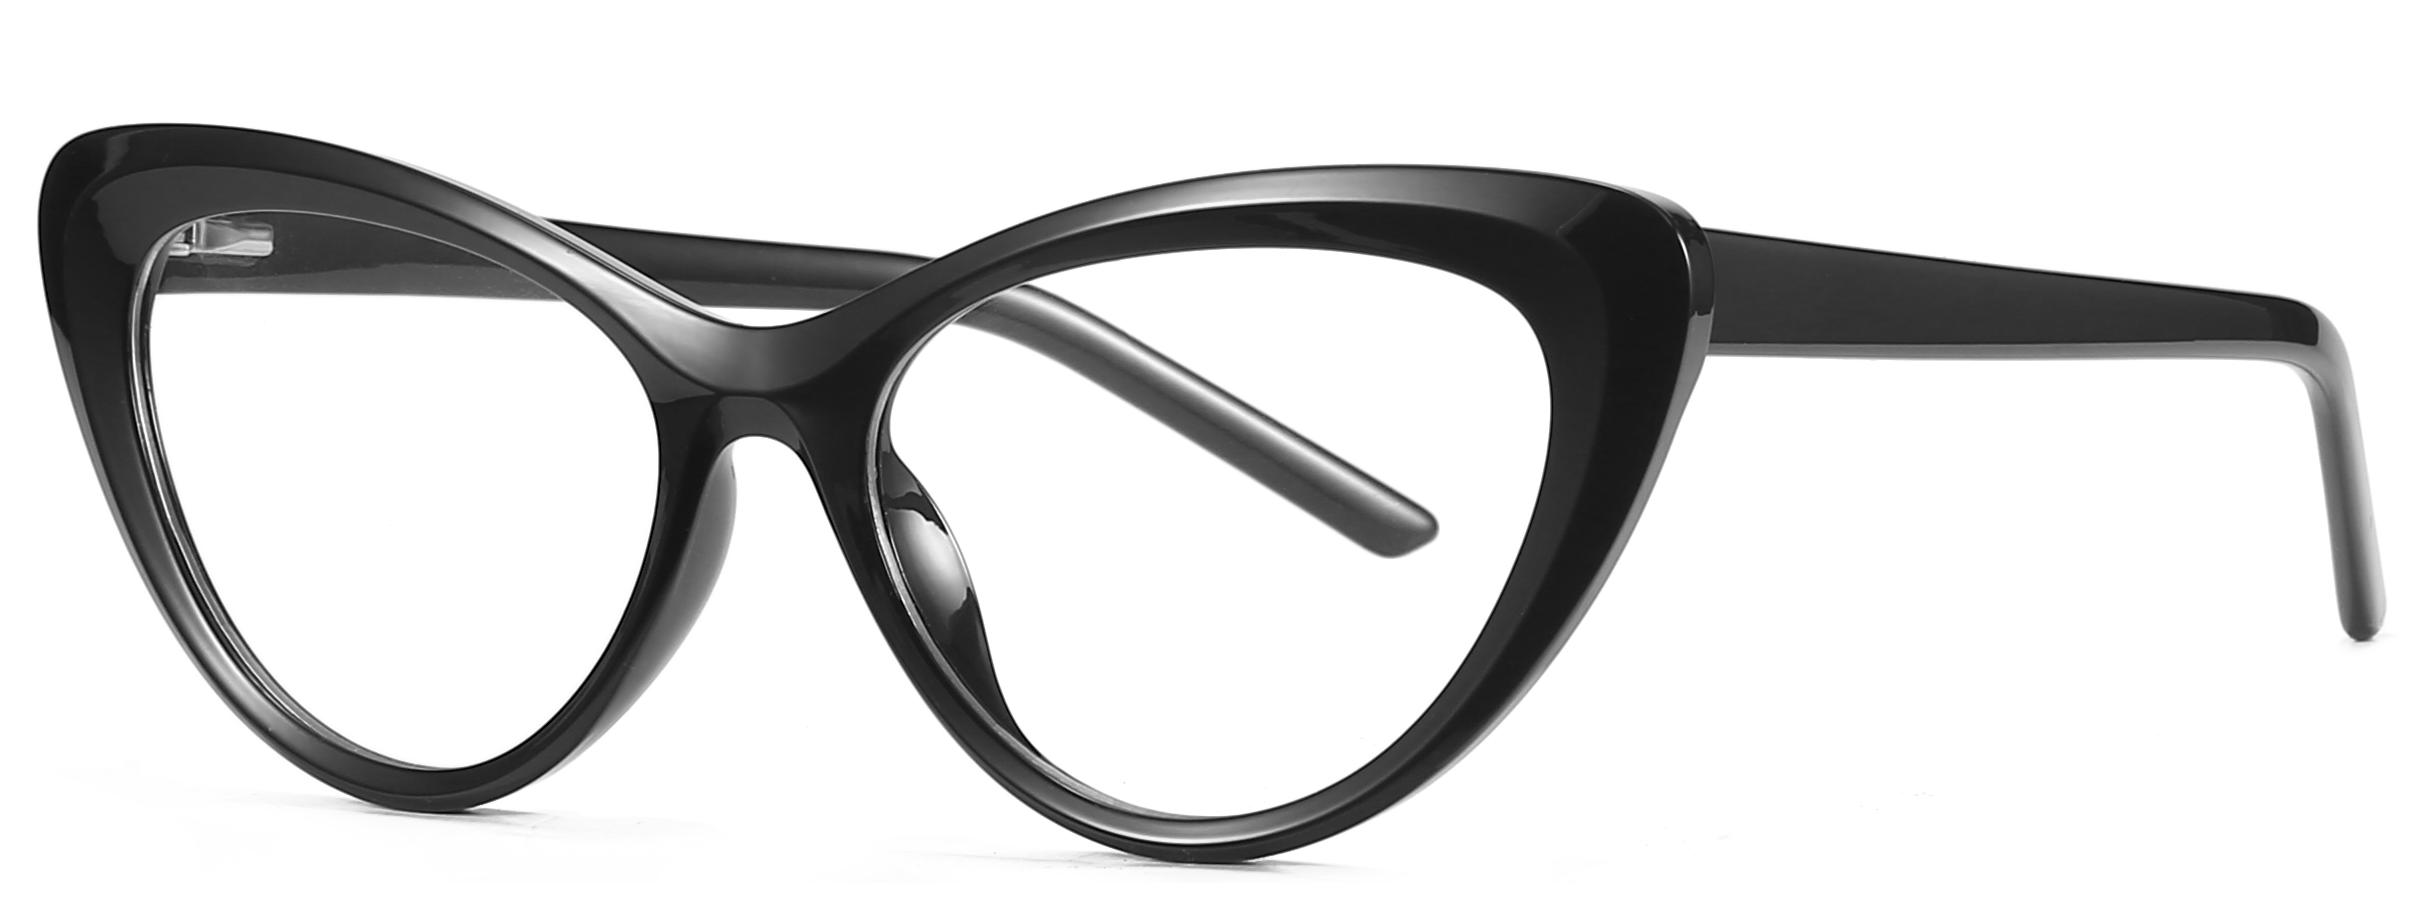 Ready Goods Fashion Cat Eye Shape TR90+CP Anti-blauwlichtlens Dames Optische Frames #2020